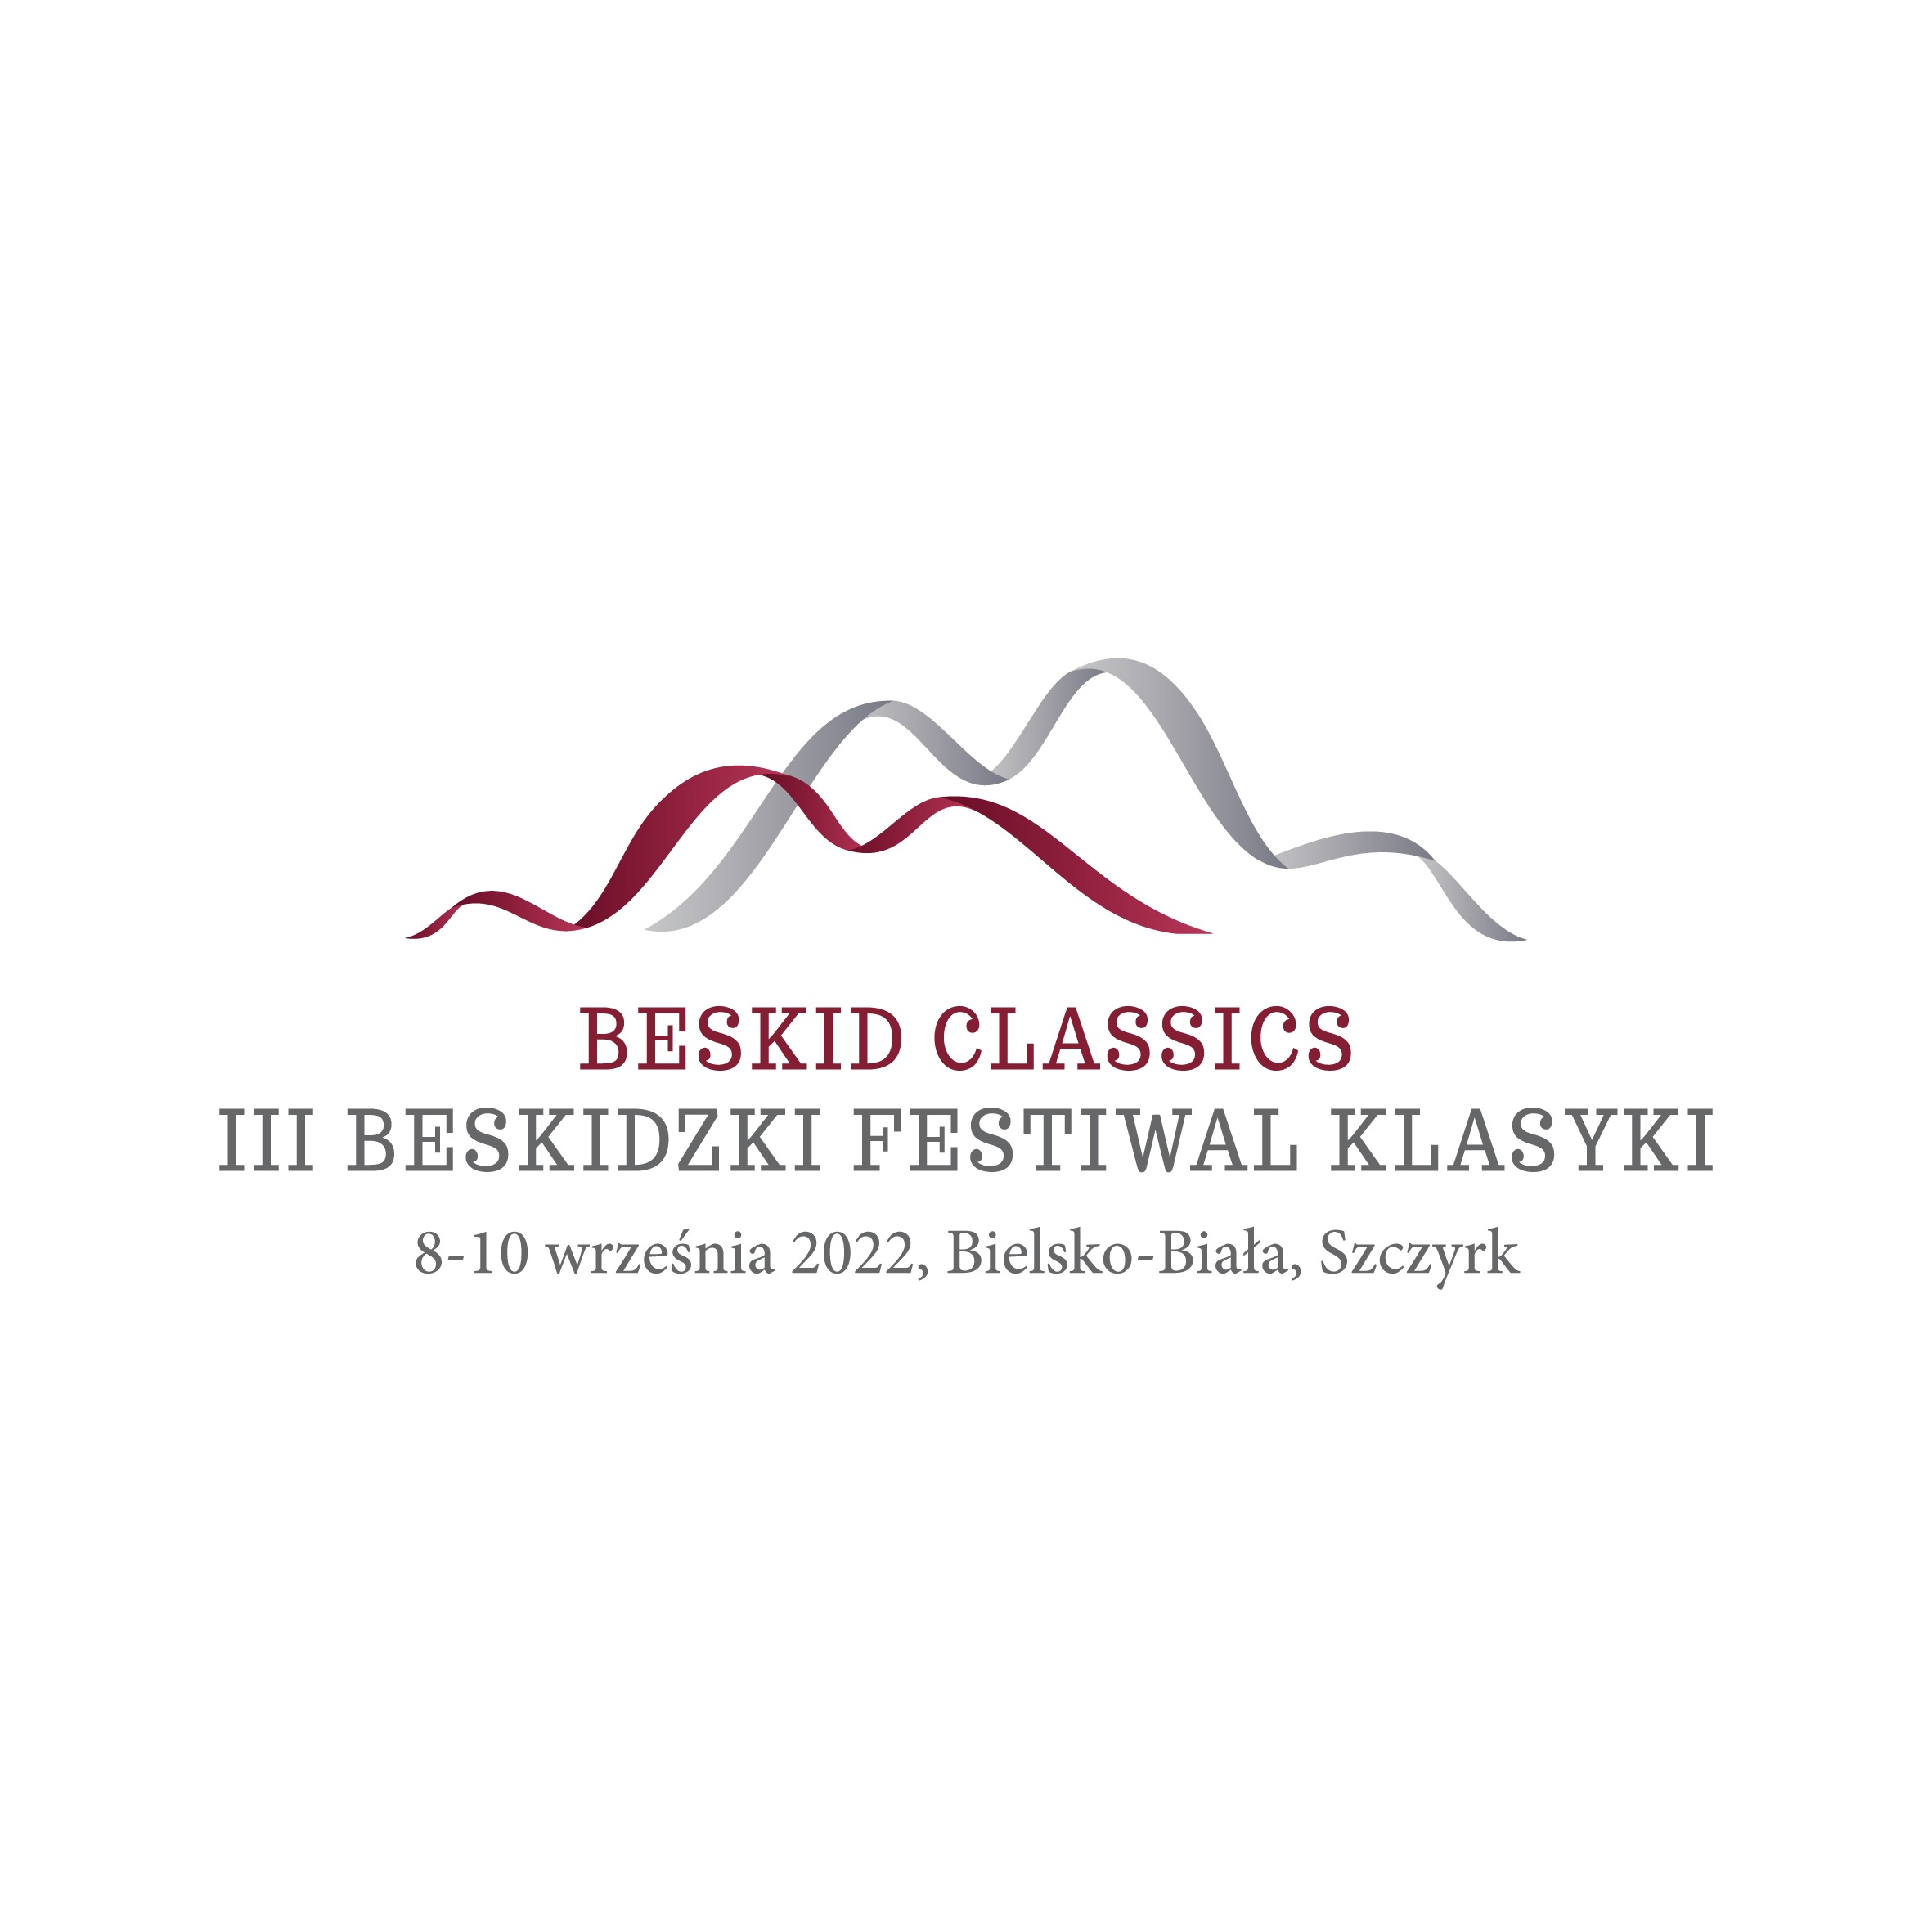  3. Beskidzki Festiwal Klasyki Beskid Classics Na zdjęciu logo imprezy